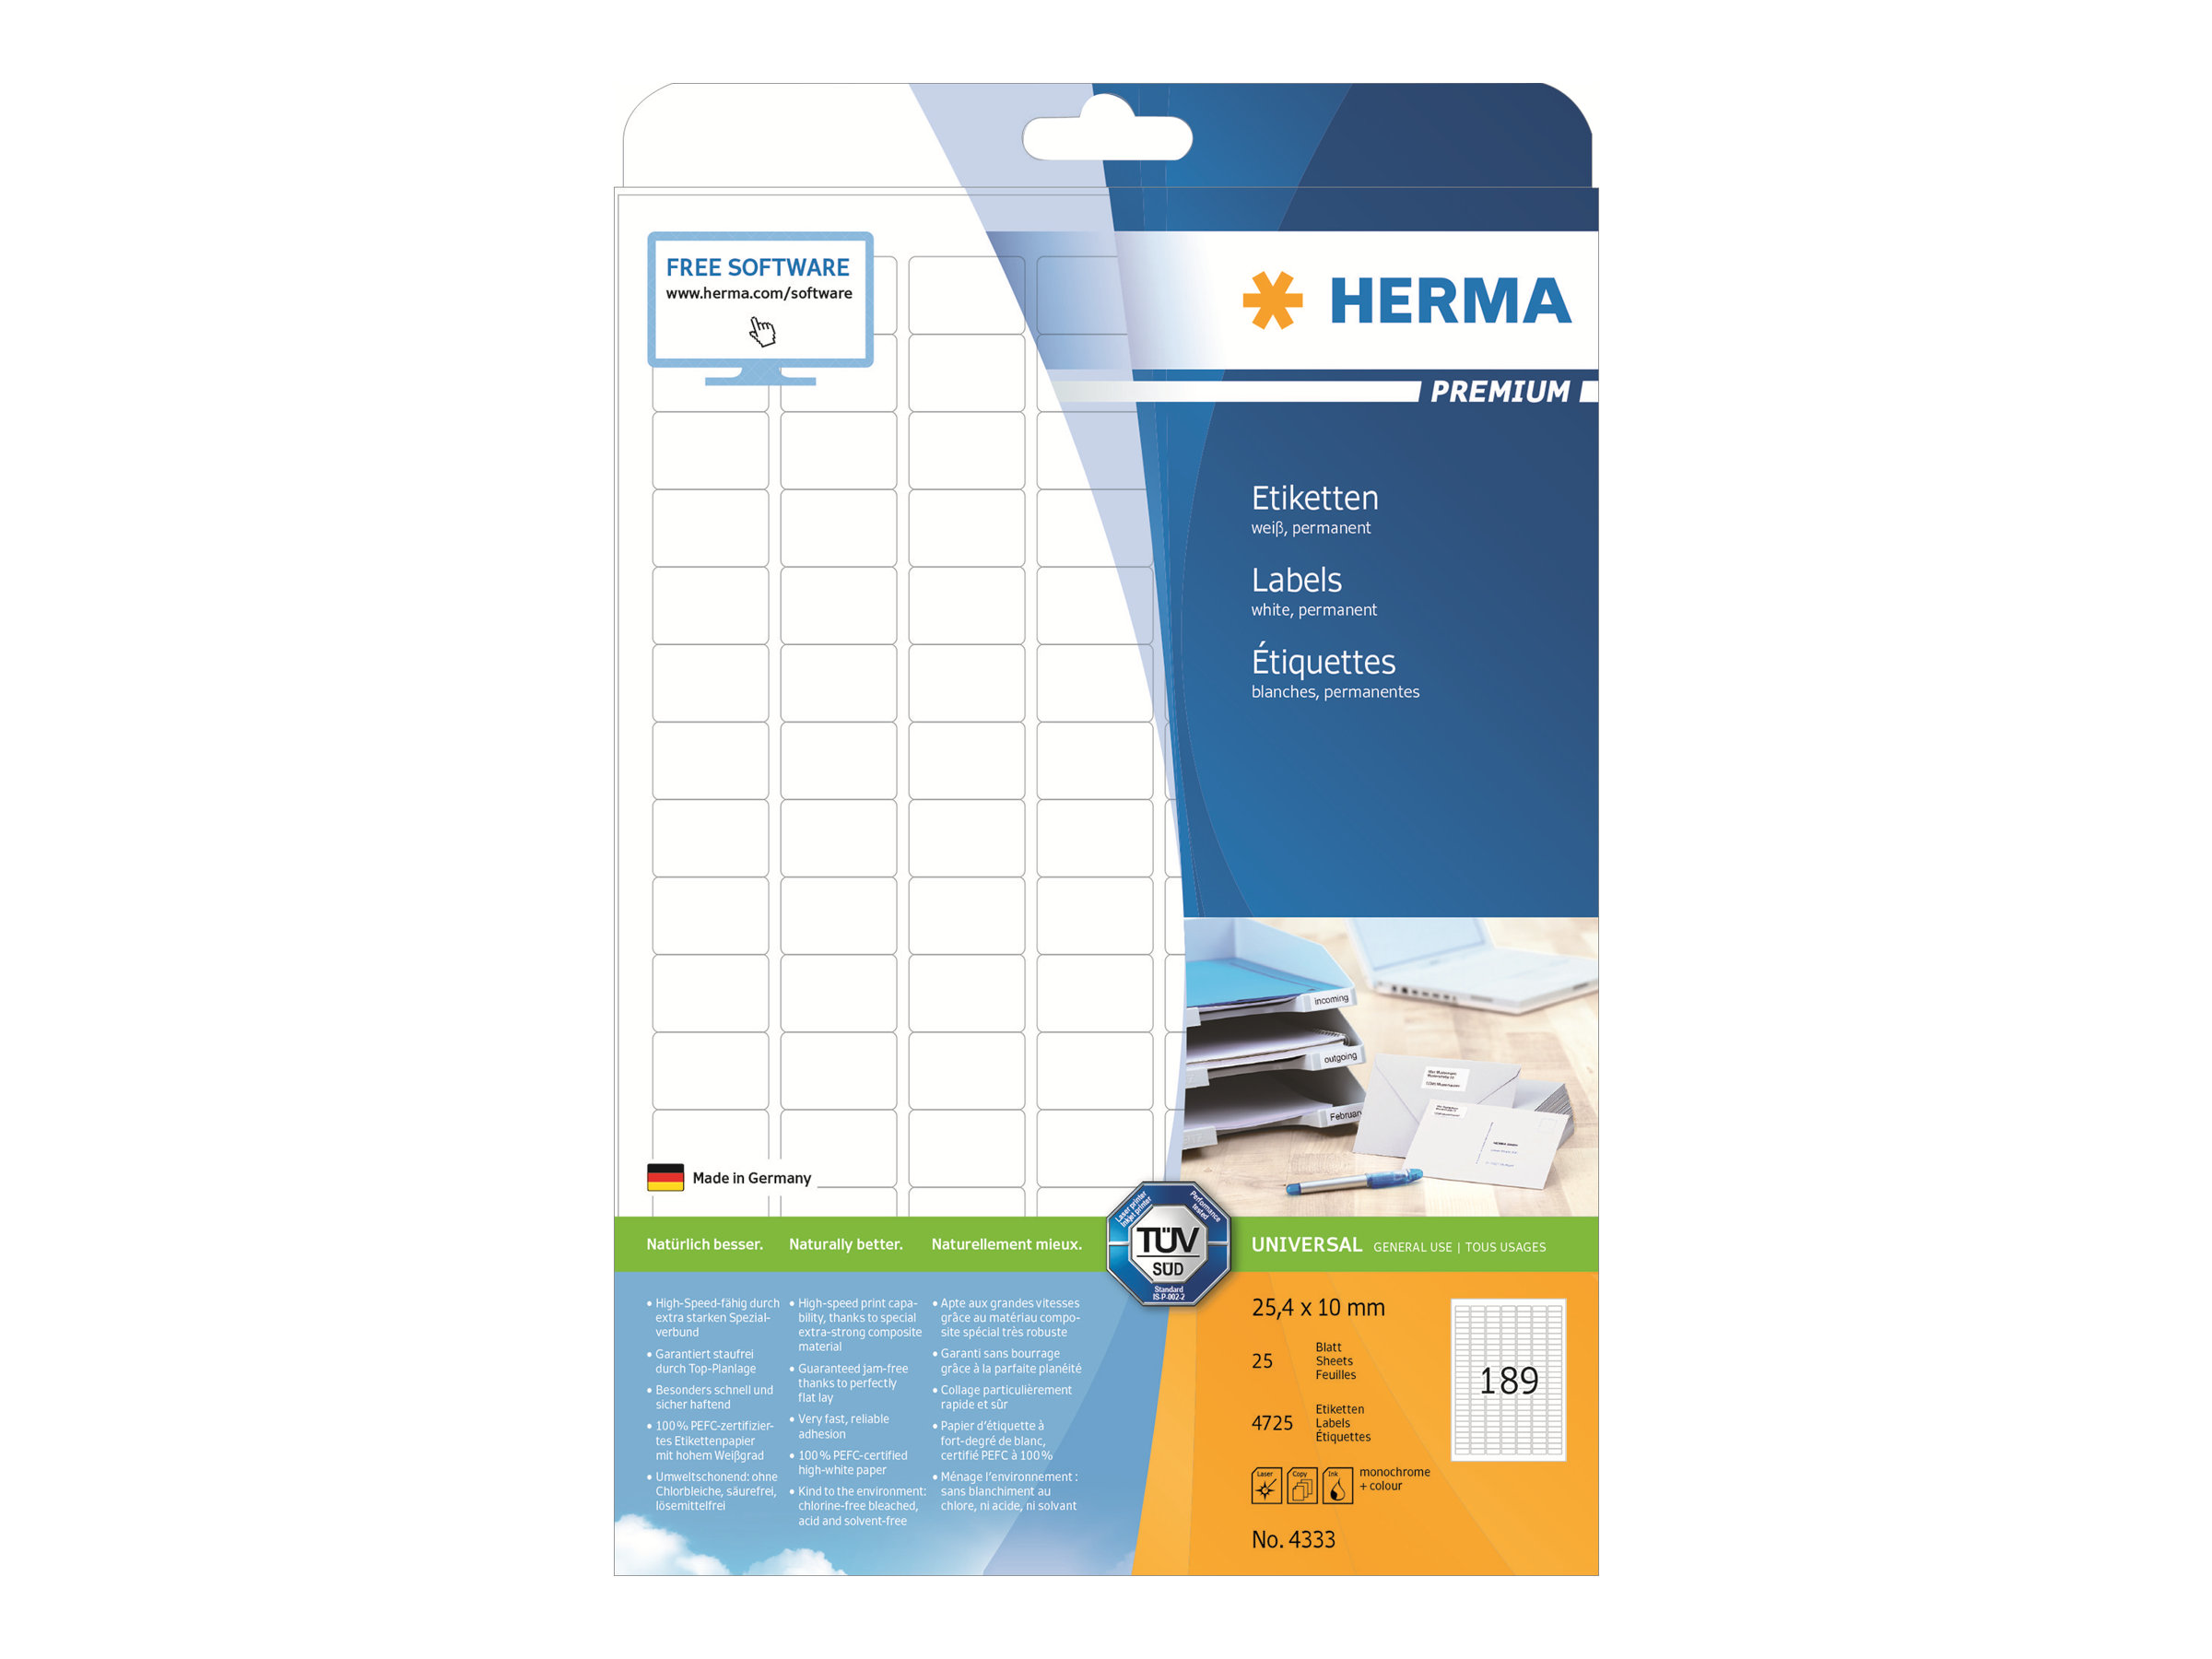 HERMA Premium - Papier - matt - permanent selbstklebend - weiß - 25.4 x 10 mm 4725 Etikett(en) (25 Bogen x 189)